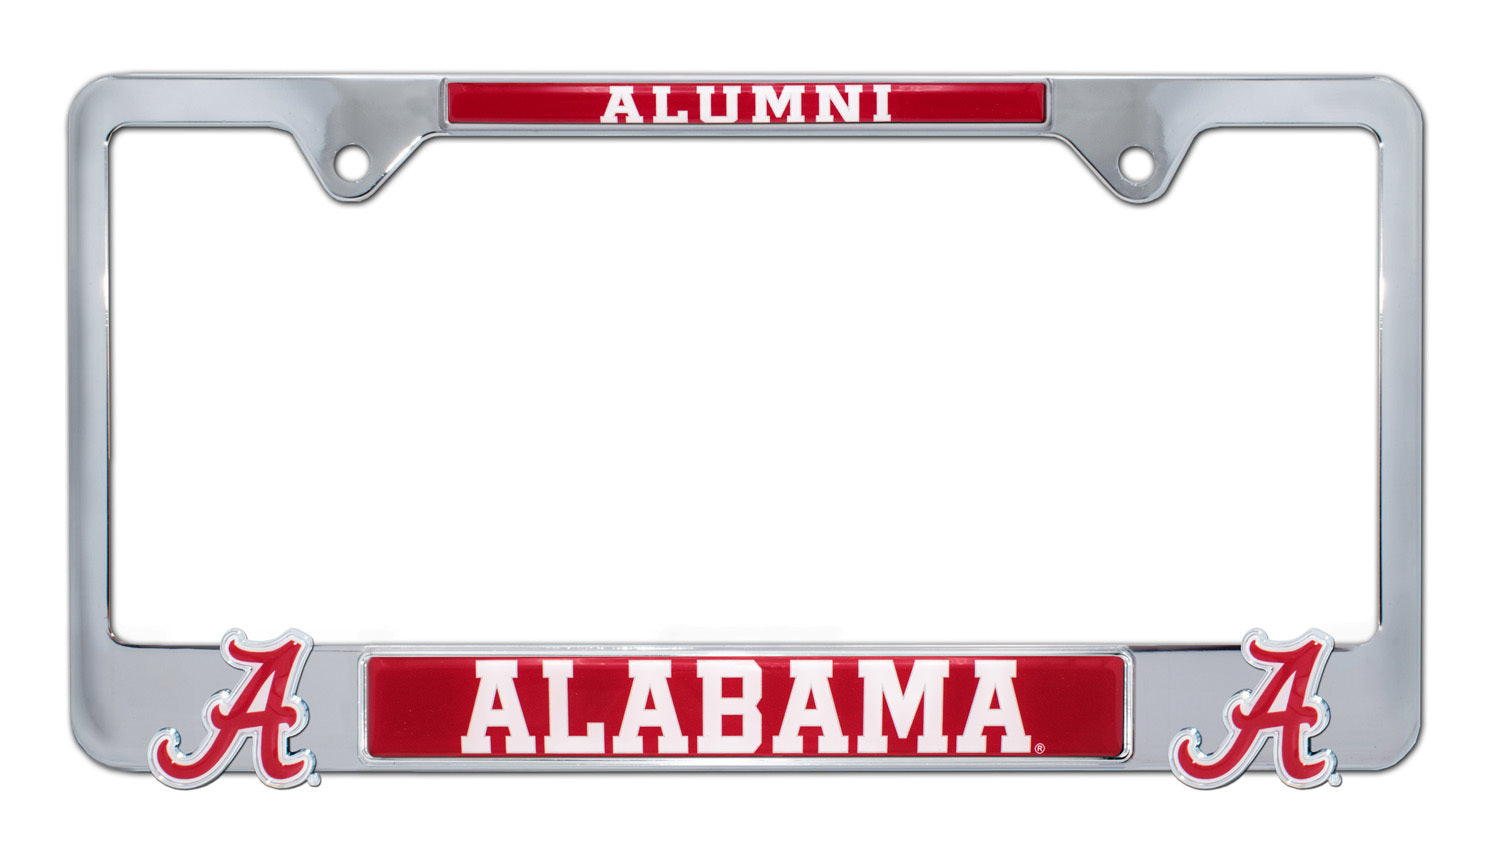 University of Alabama Alumni 3D License Plate Frame